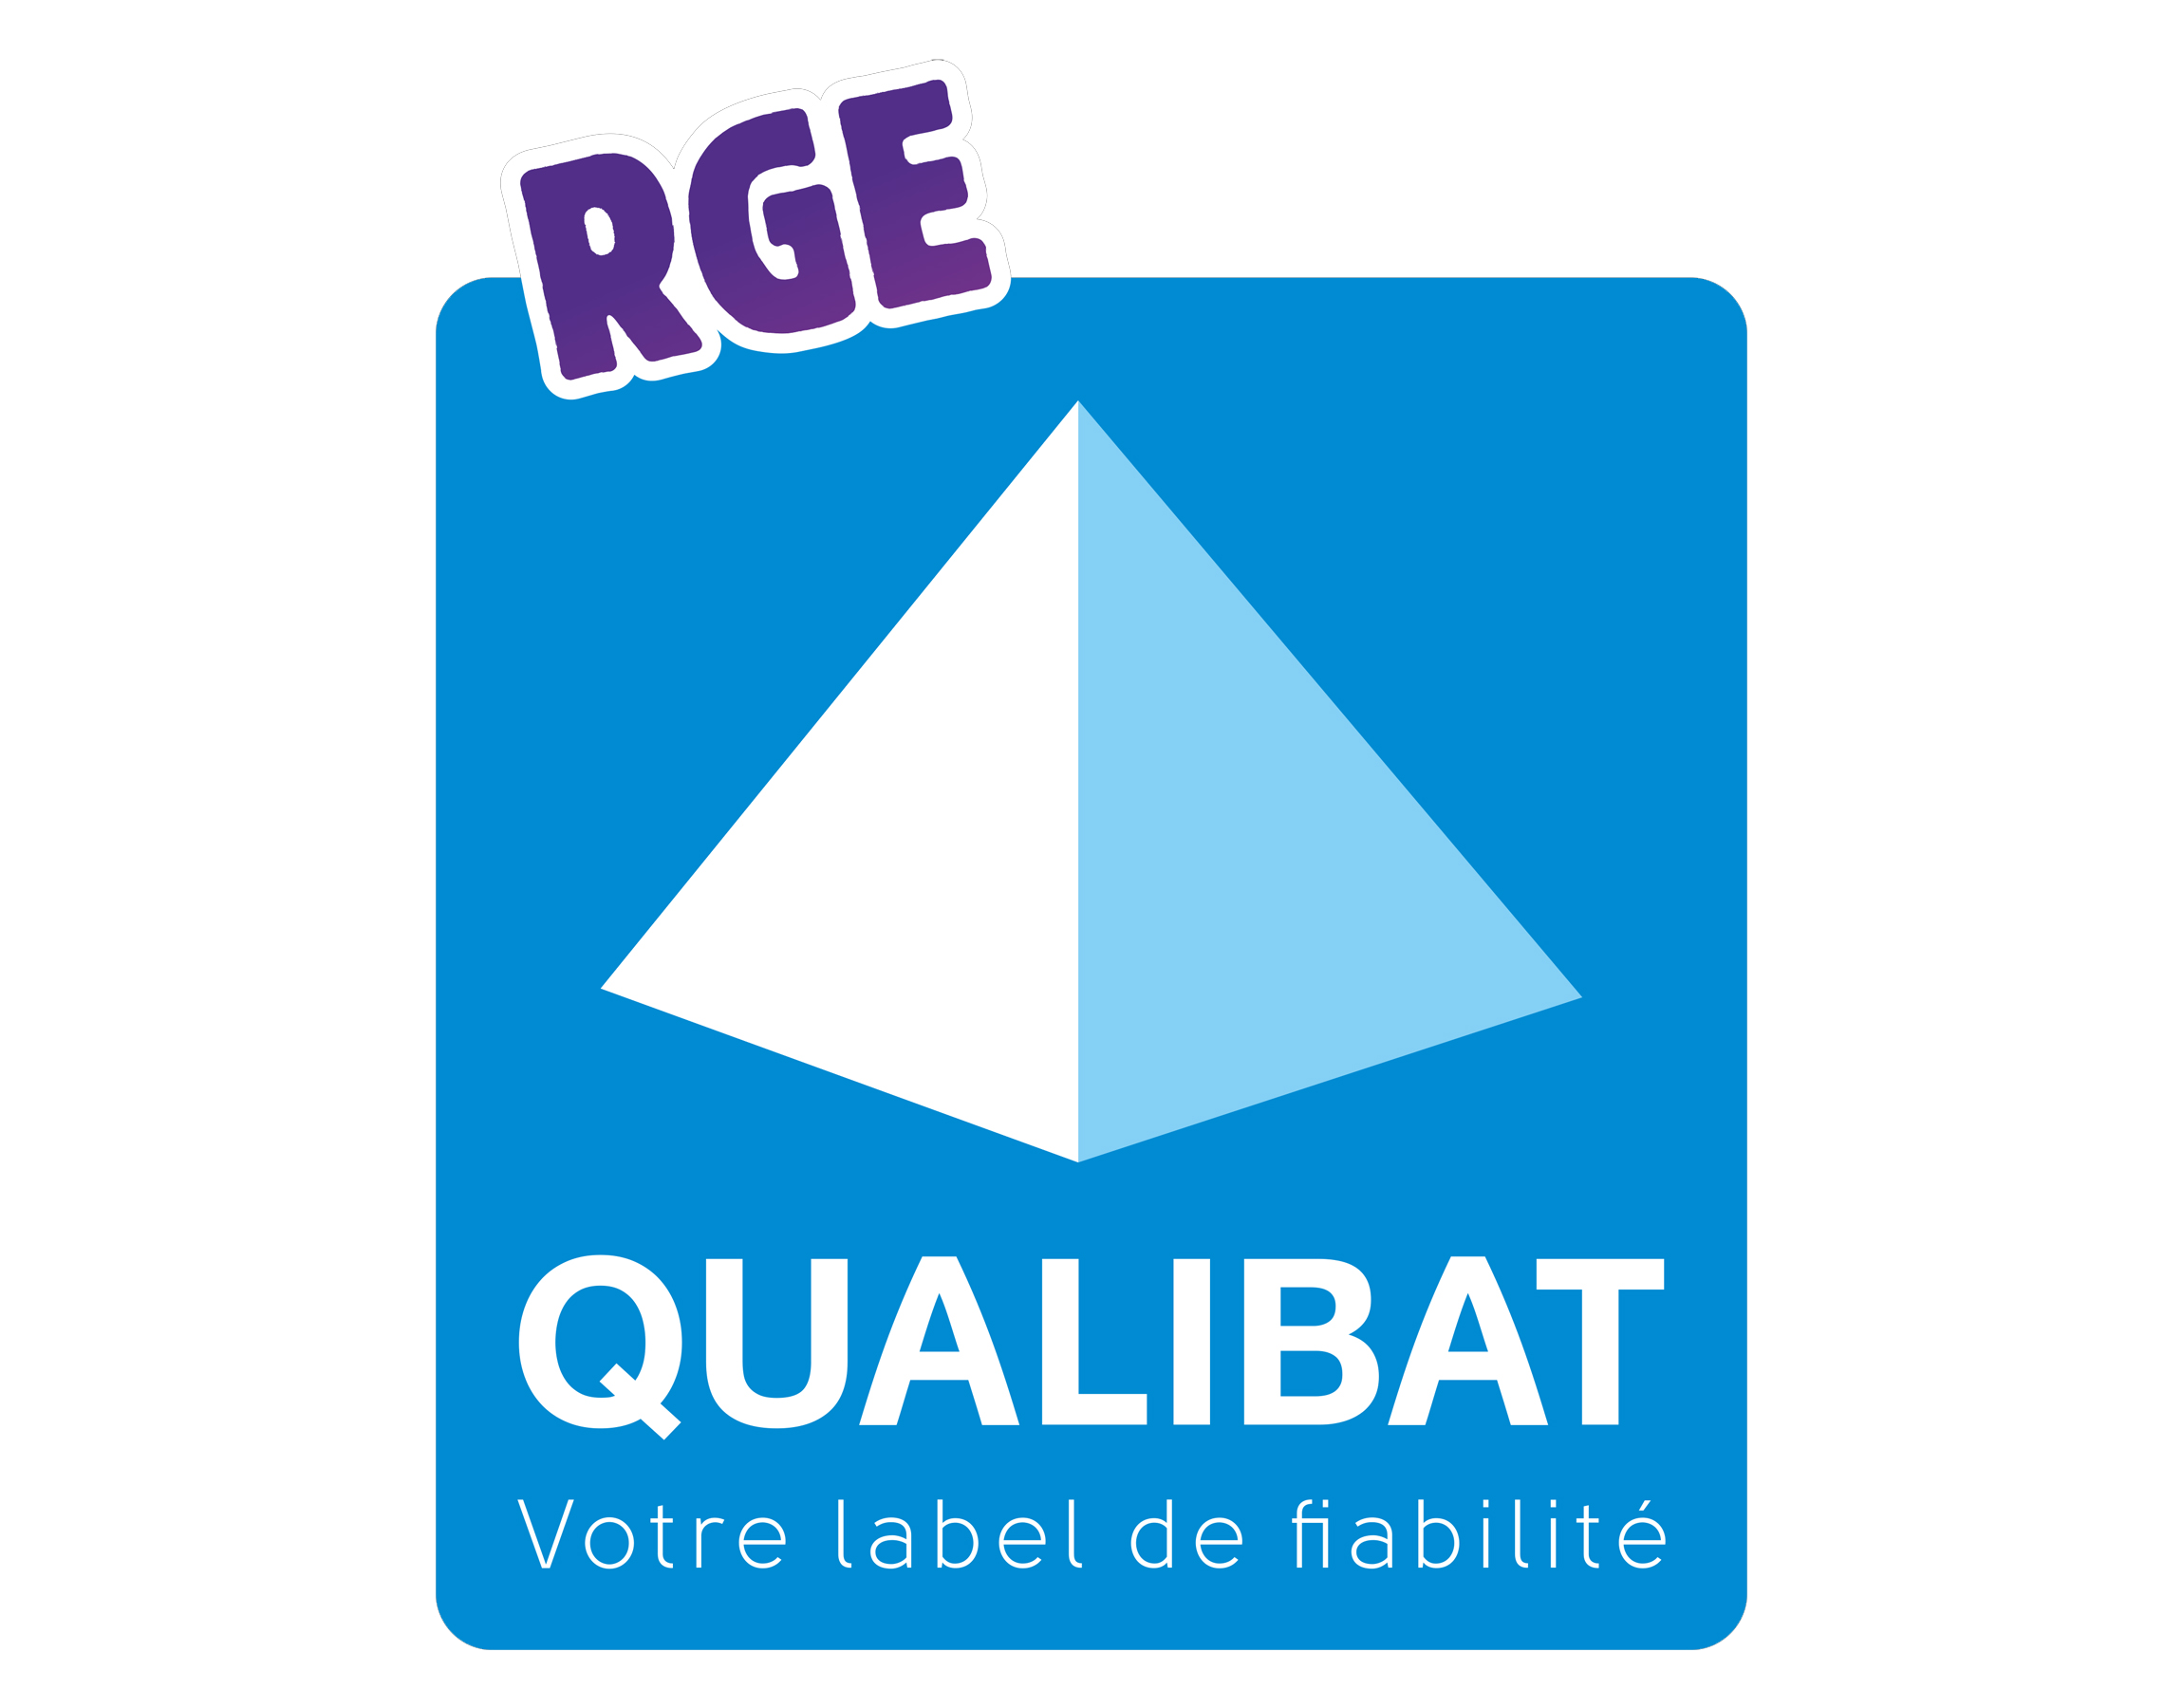 logo RGE